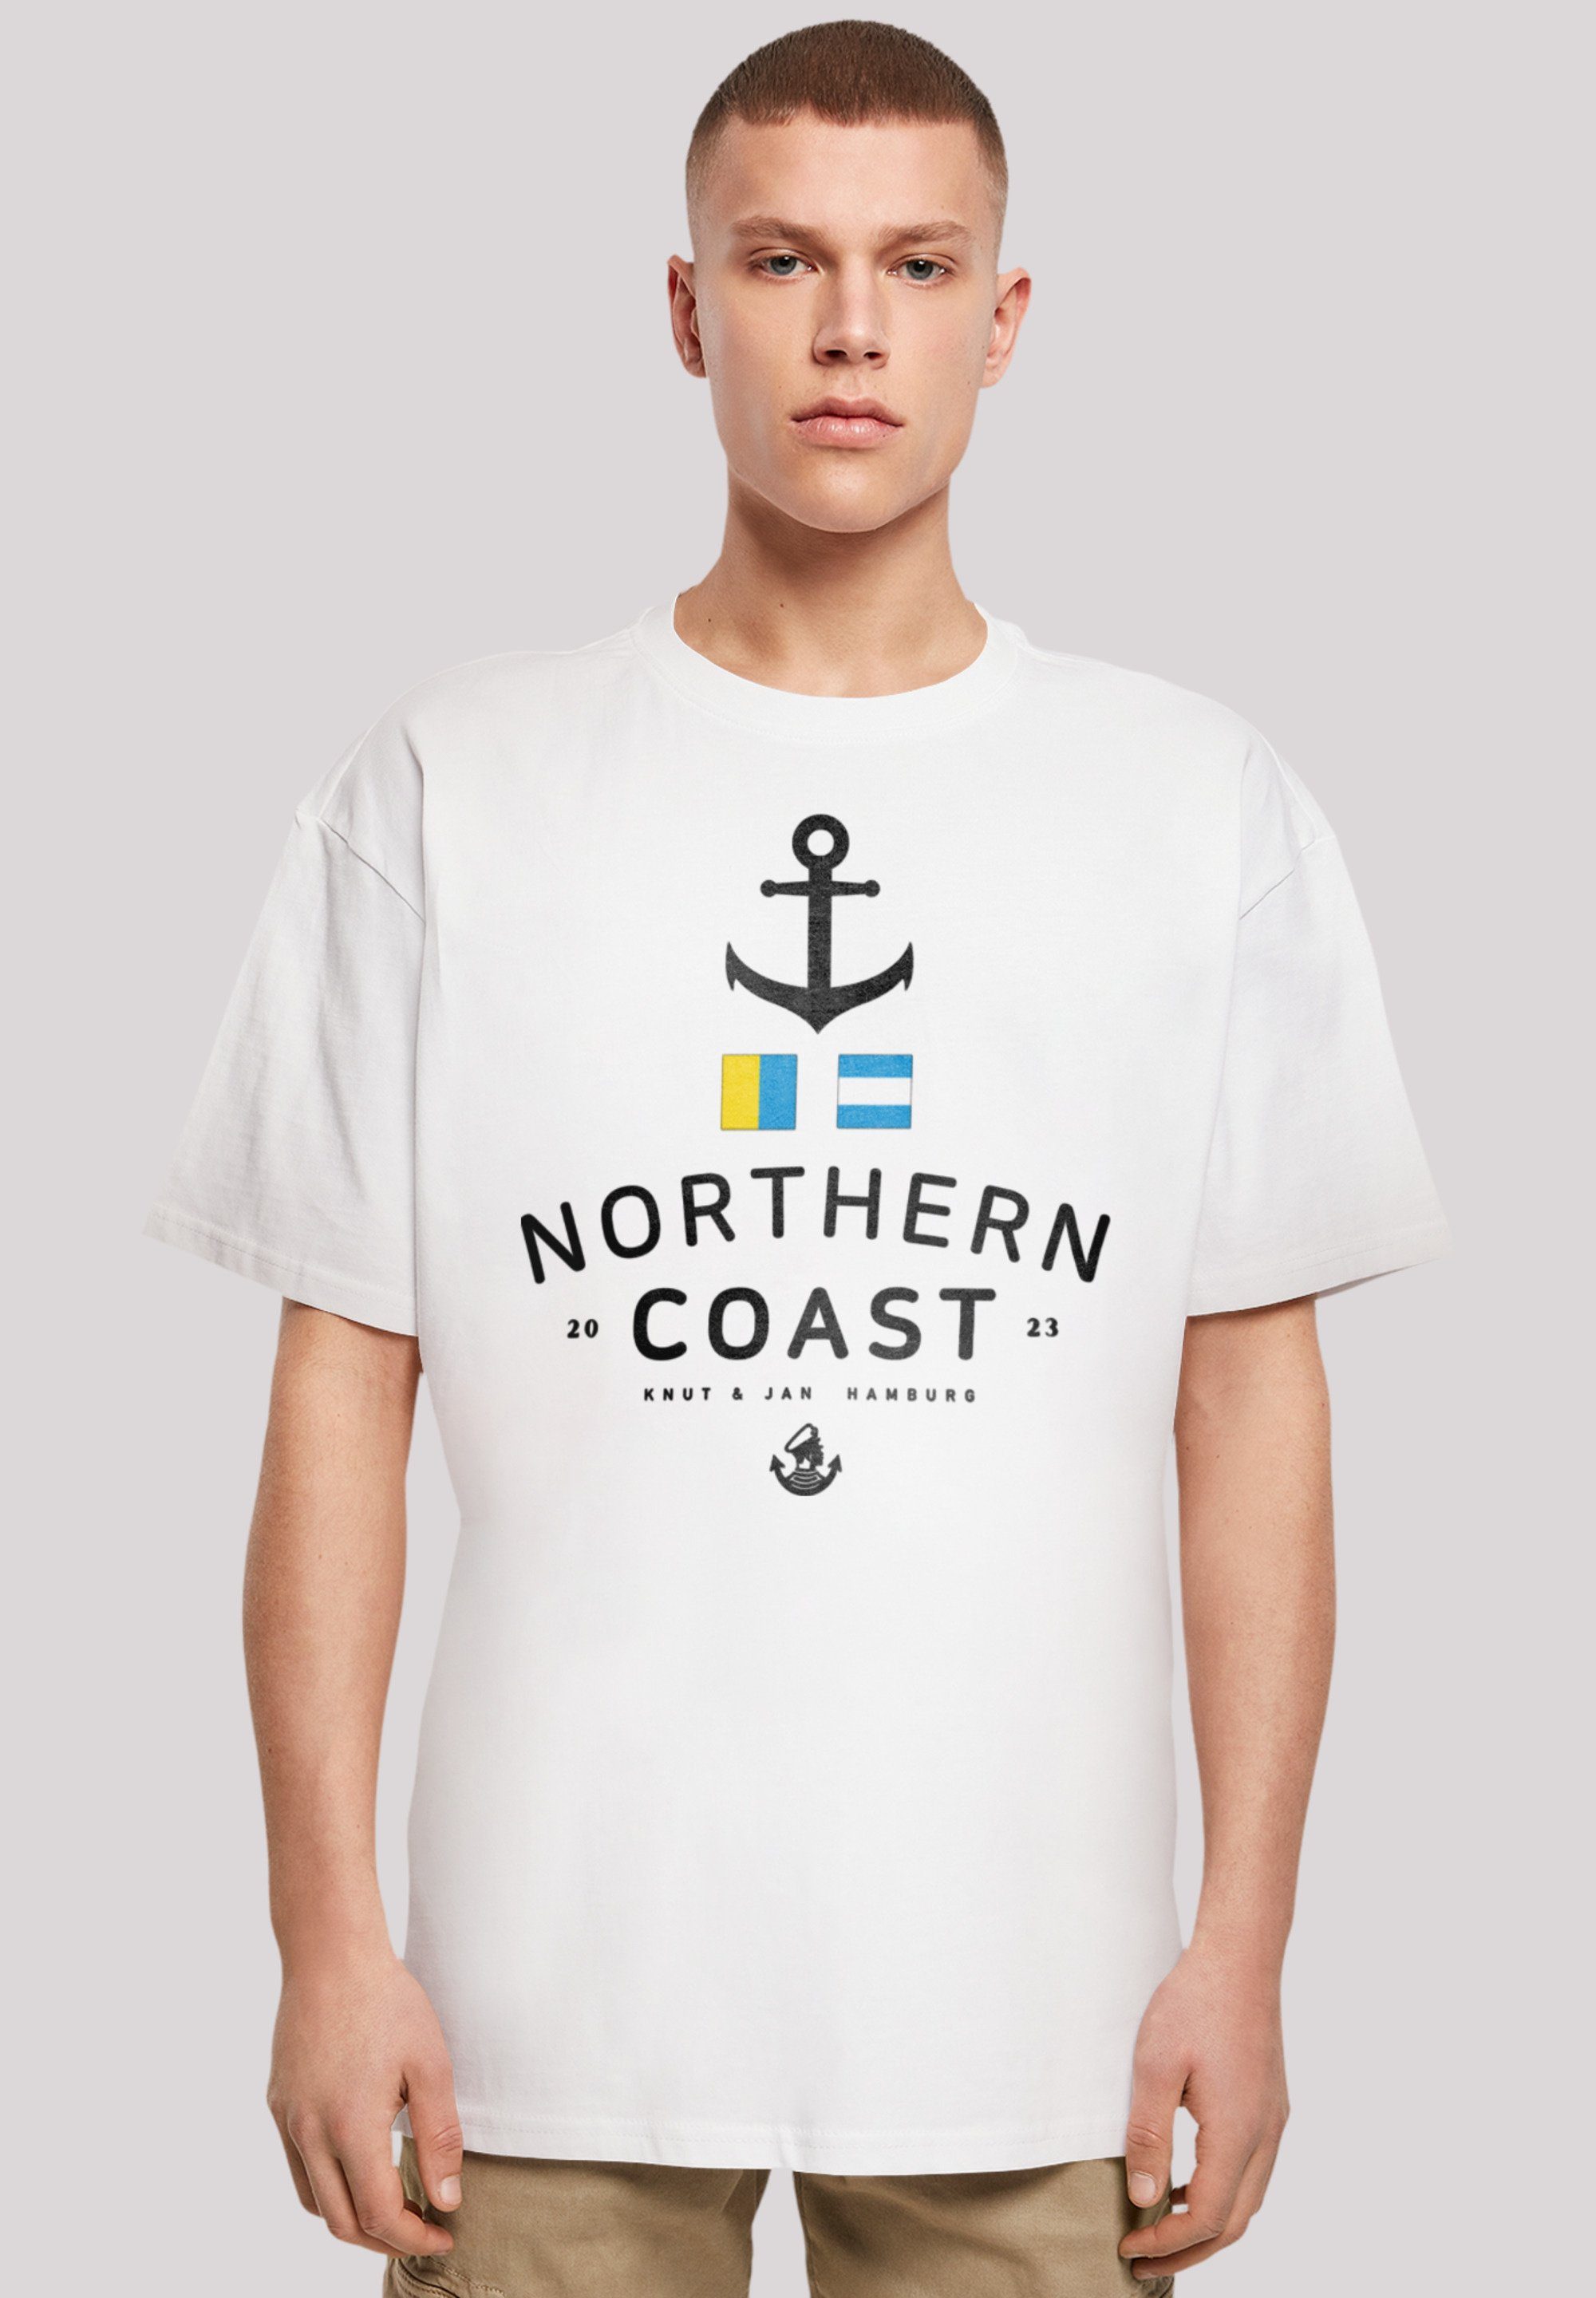 Print Coast T-Shirt Nordsee weiß Nordic Jan & Hamburg Knut F4NT4STIC